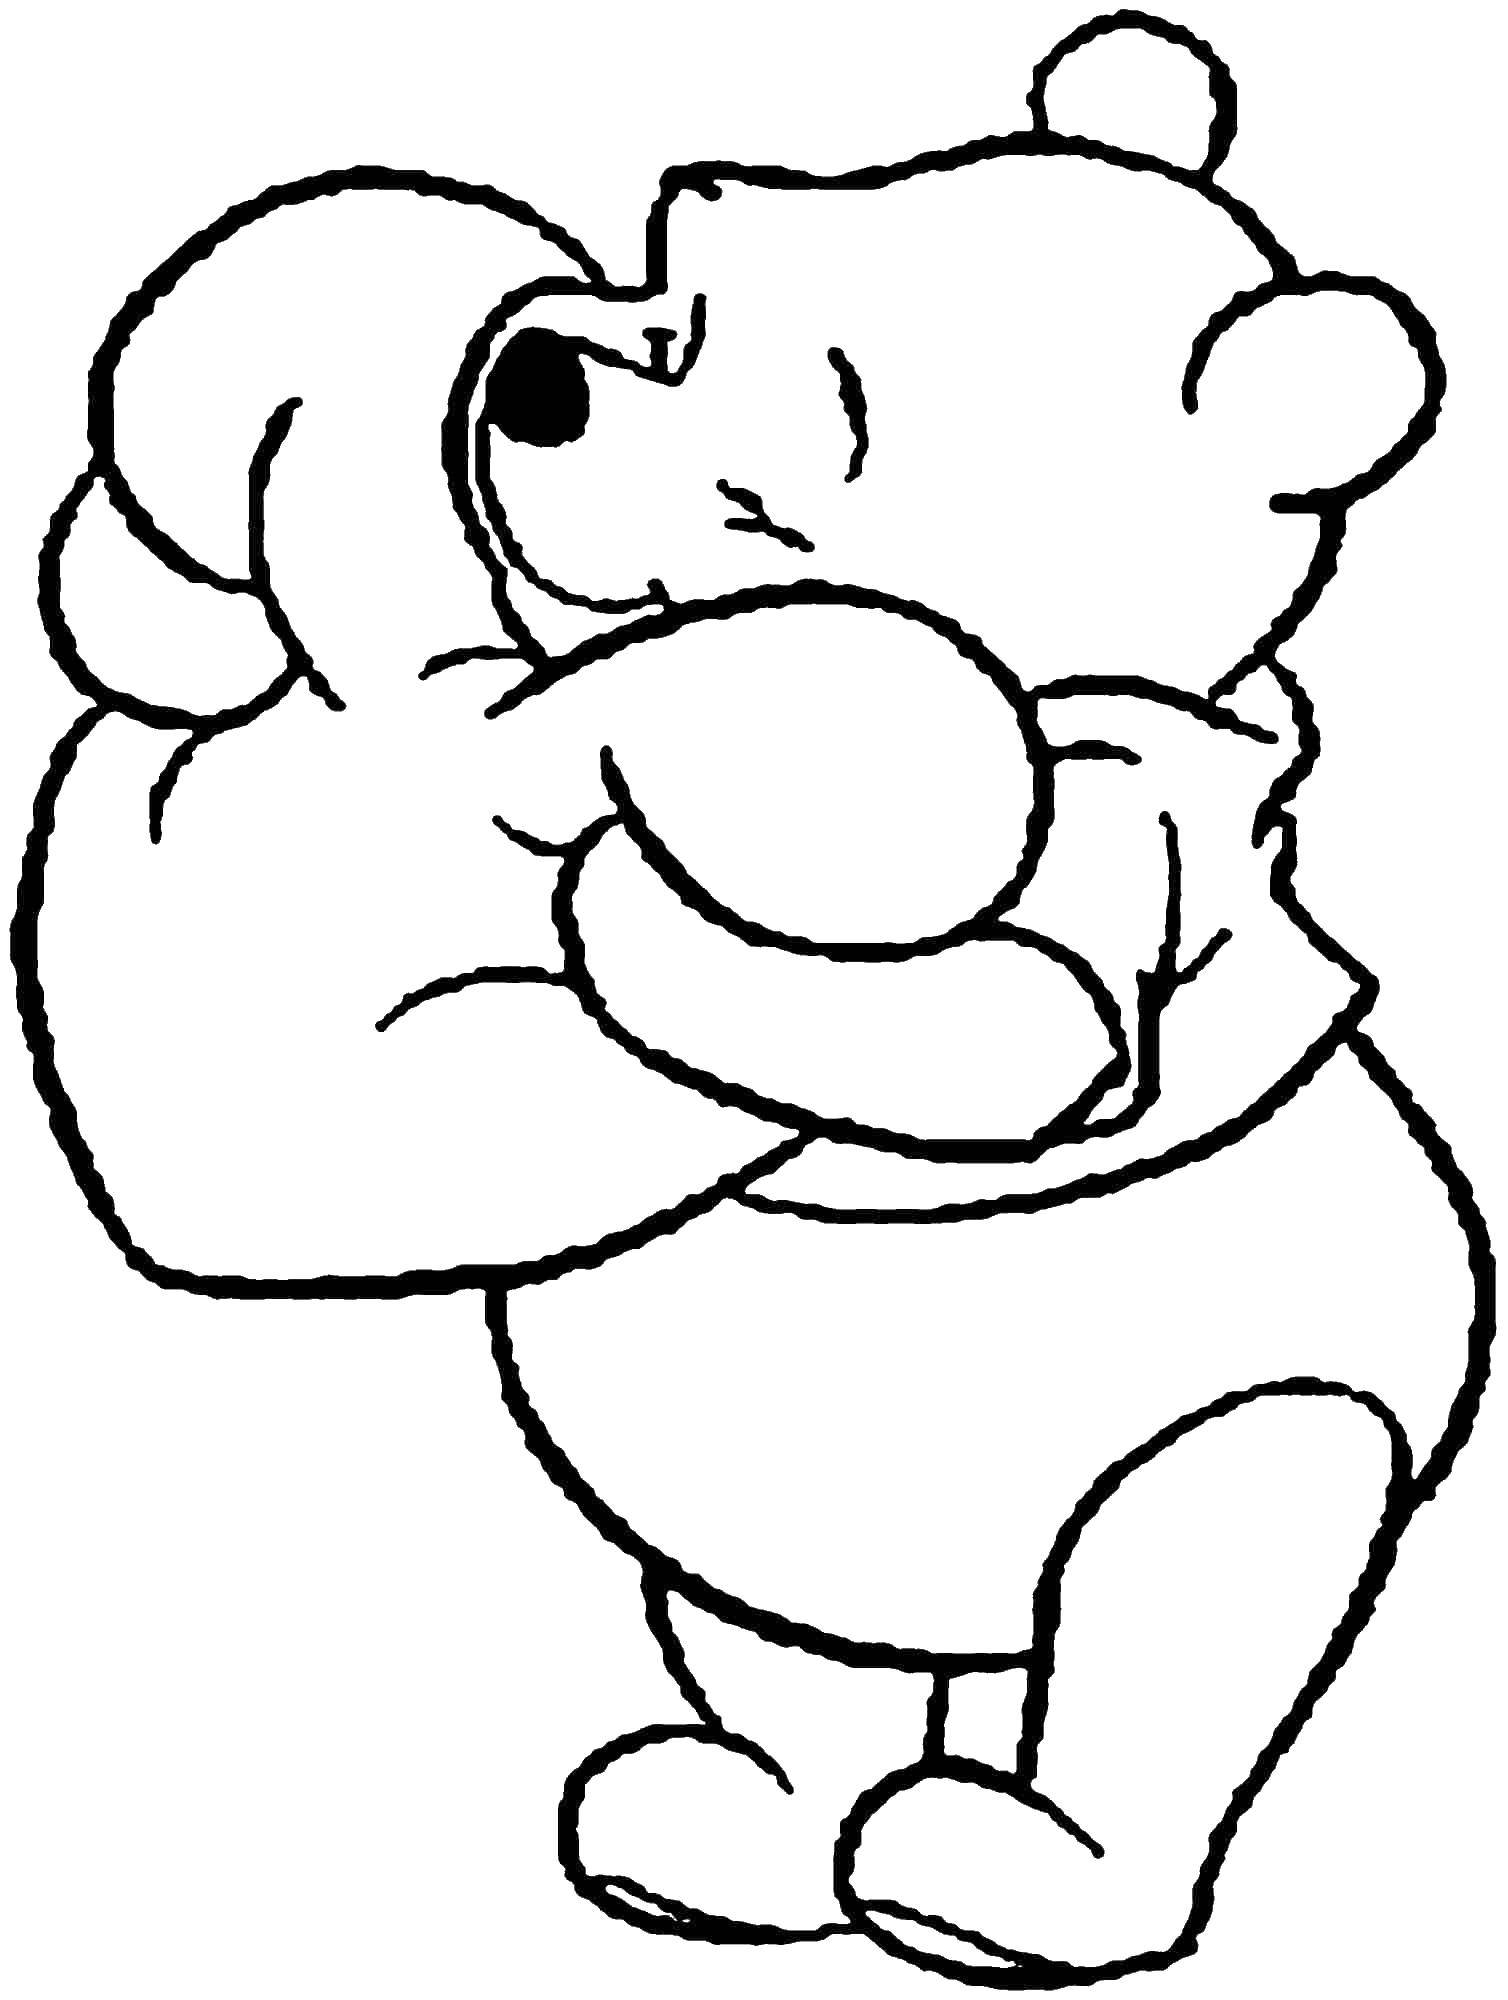 Раскраски из зарубежного мультфильма про Винни Пуха и его друзей для самых маленьких   Винни пух с сердечком